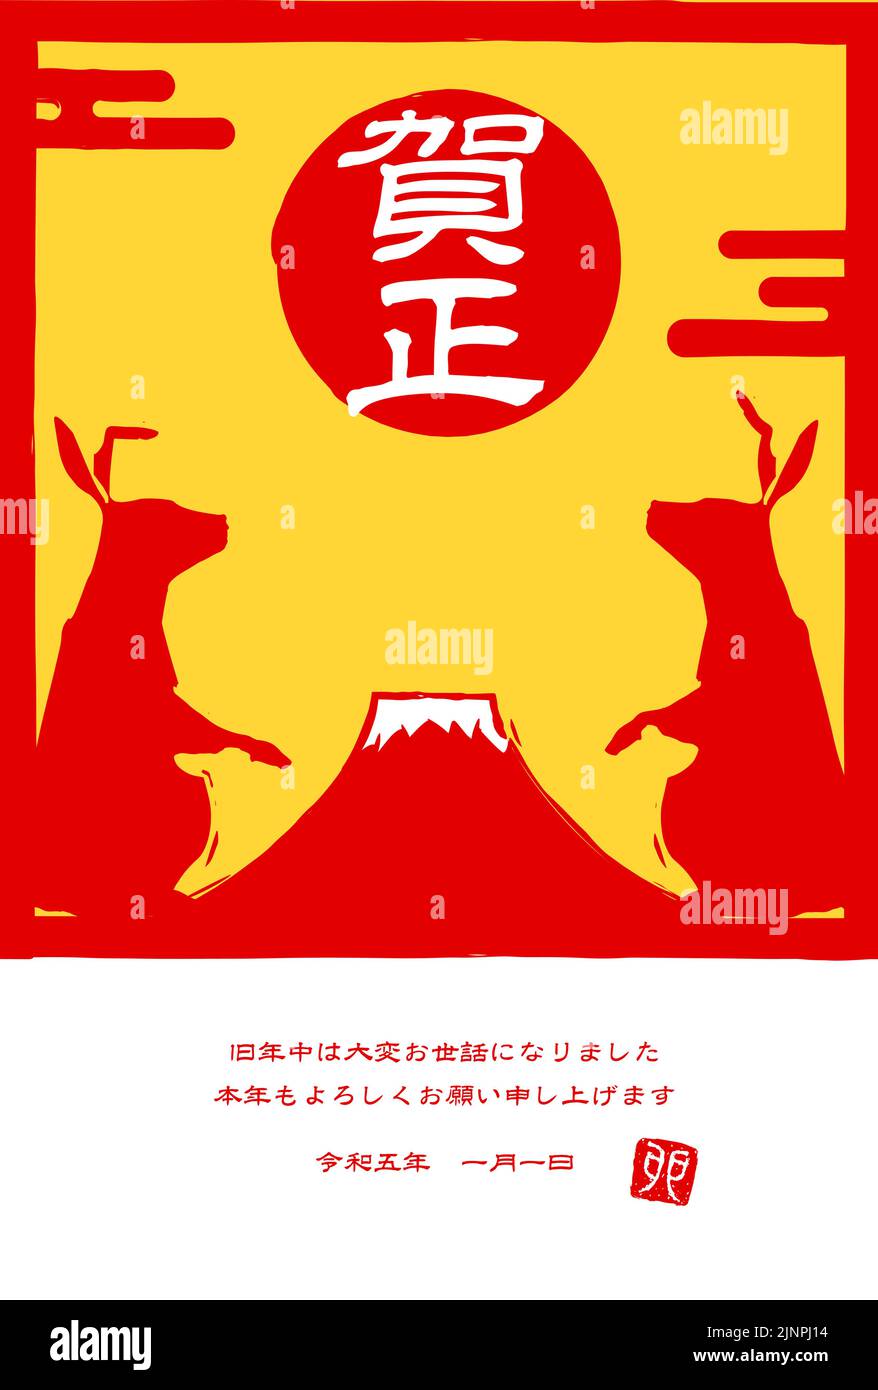 2023 carte du nouvel an de lapin, imprimé d'un lapin et du Mont Fuji - Traduction: Bonne année, merci encore cette année. Reiwa5. Lapin Illustration de Vecteur